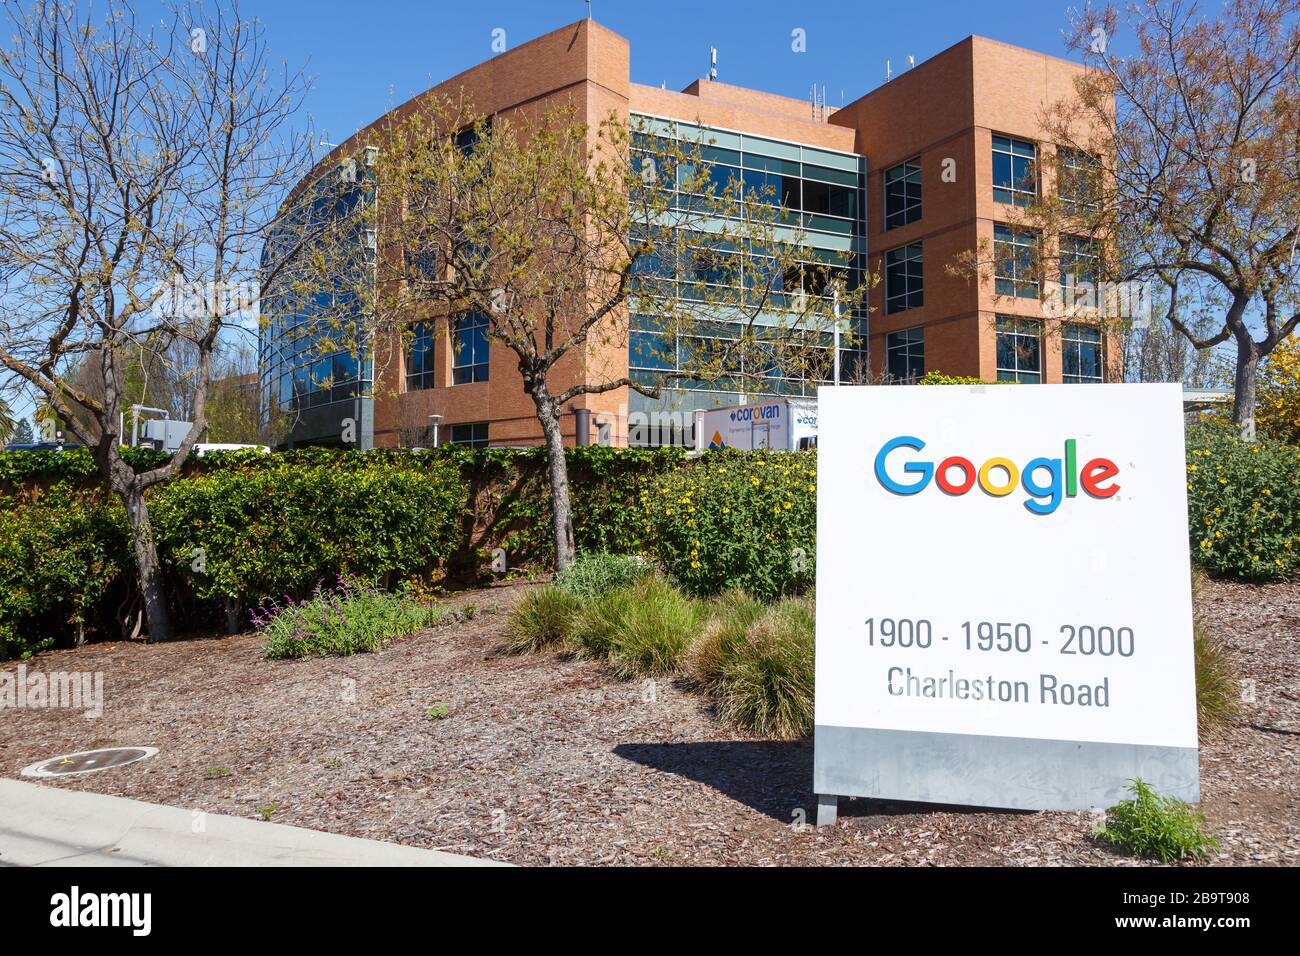 Mountain View, California – April 10, 2019: Google headquarter headquarters HQ company Googleplex Silicon Valley Mountain View in California. Stock Photo